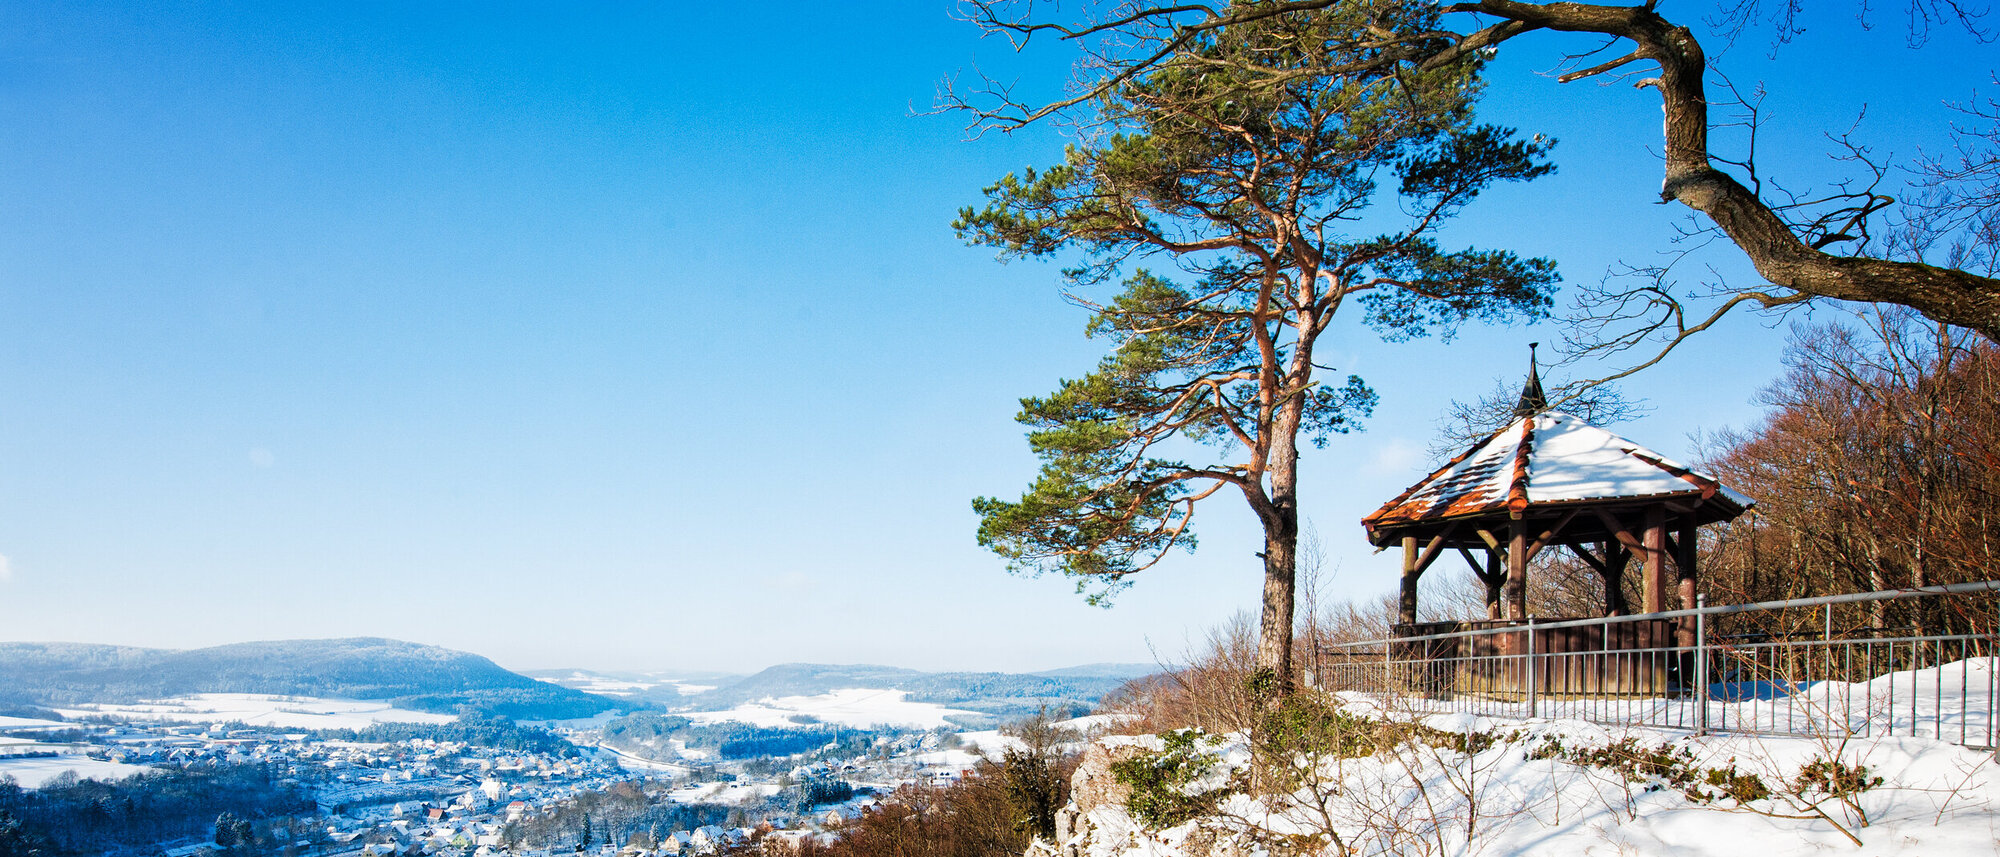 An einer Felskante steht in schneebedeckter Landschaft neben einem Baum ein Holzpavillon. Darunter liegend der Ort.